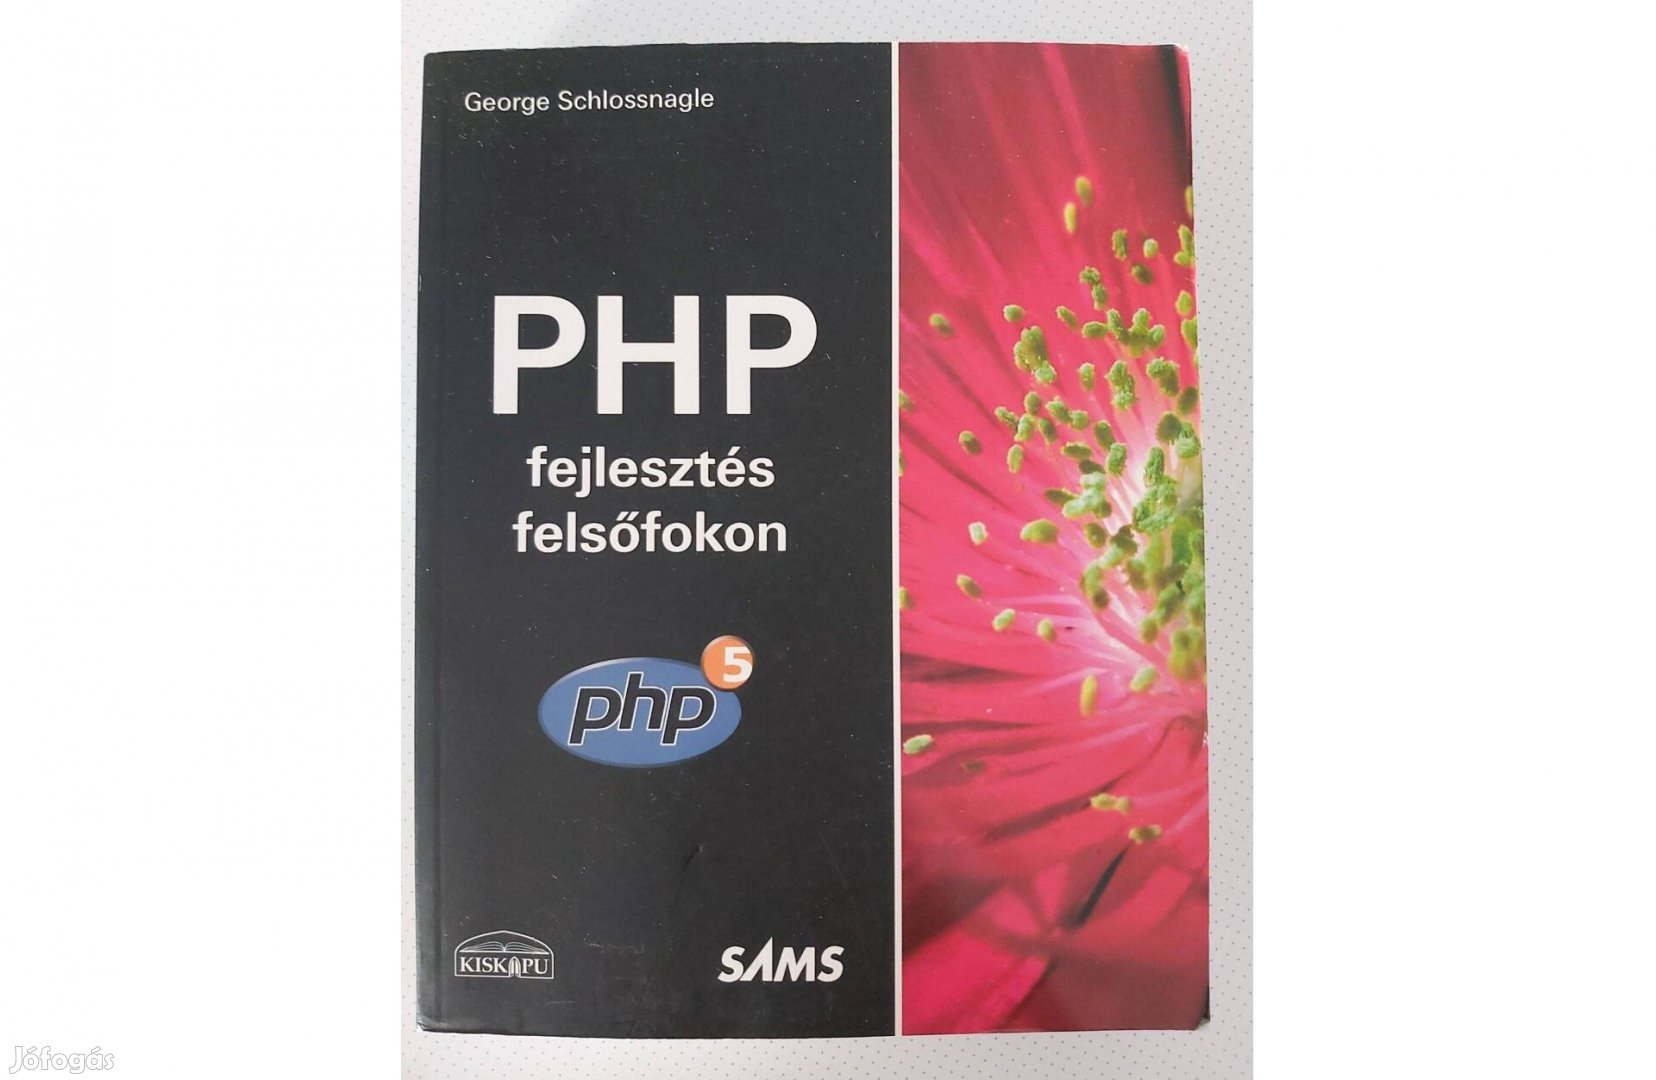 George Schlossnagle: PHP fejlesztés felsőfokon